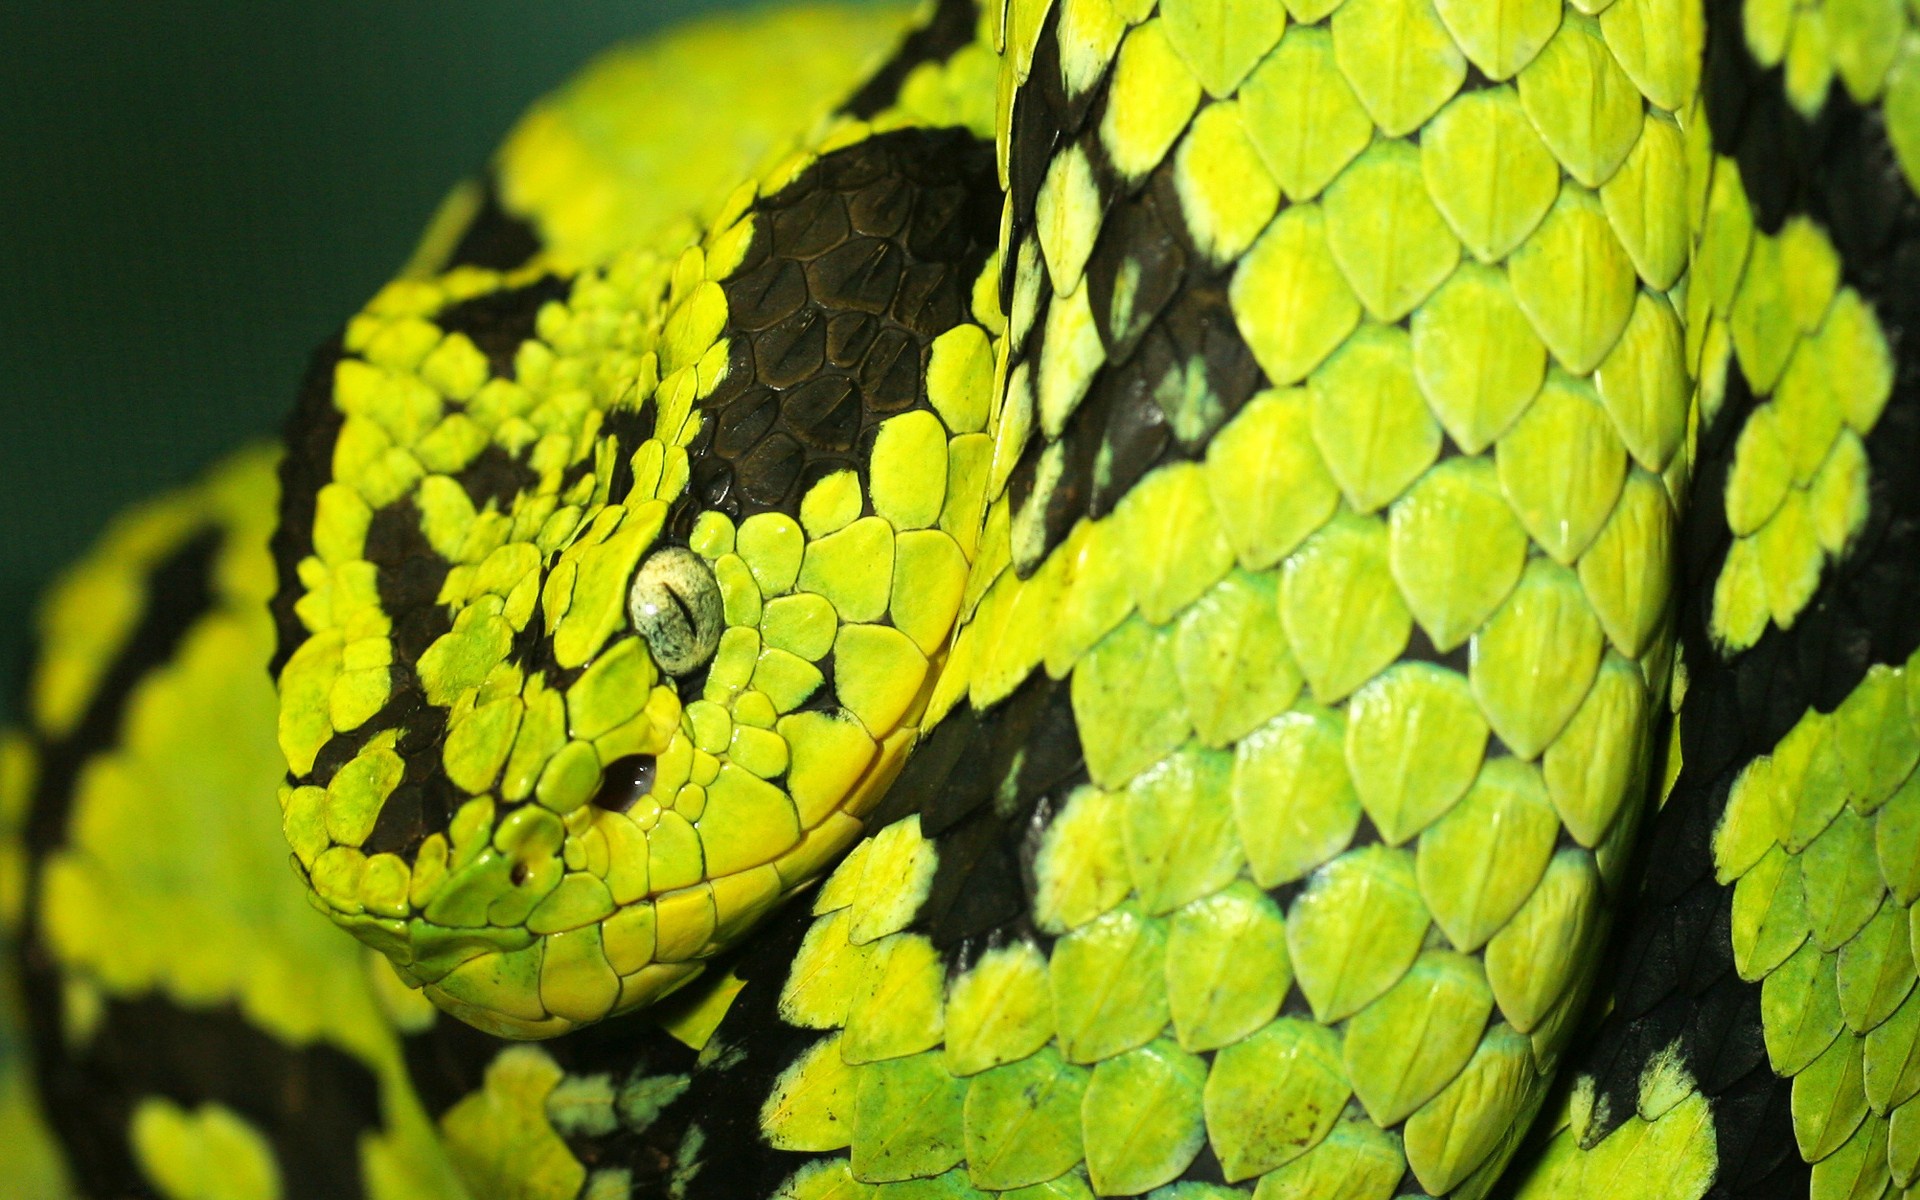 Desktop wallpaper featuring a stunning snake.